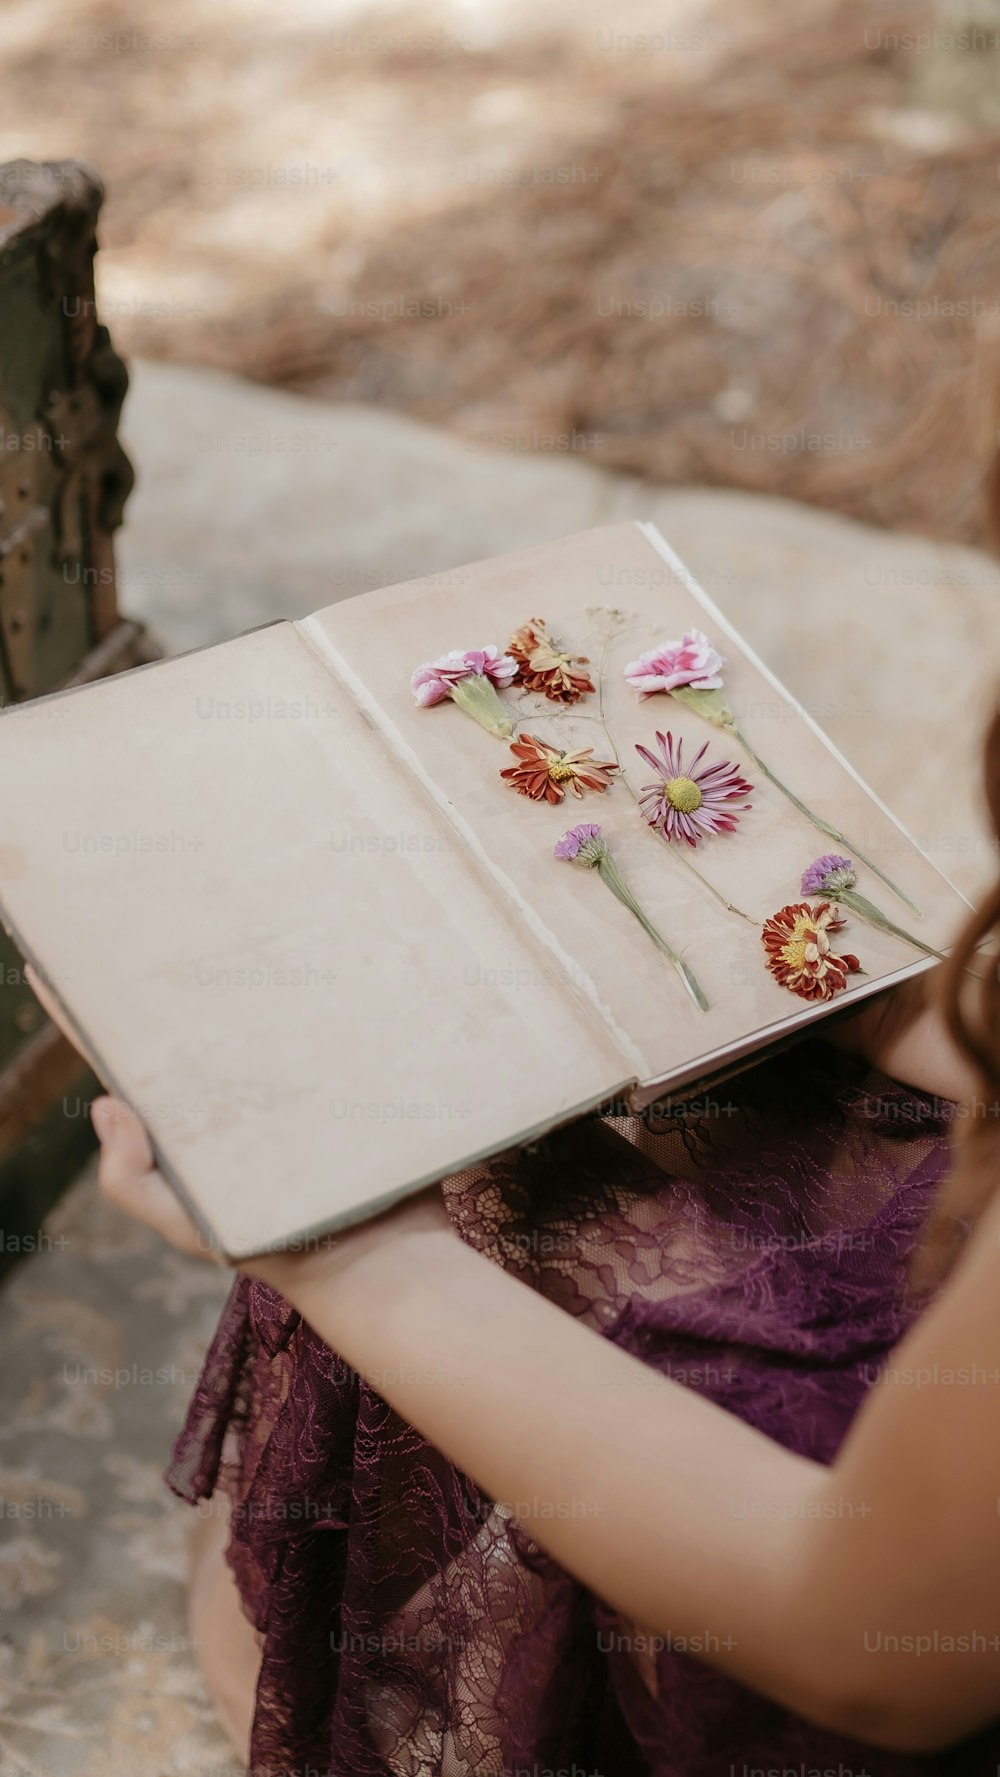 Eine Frau hält ein Buch mit Blumen darauf